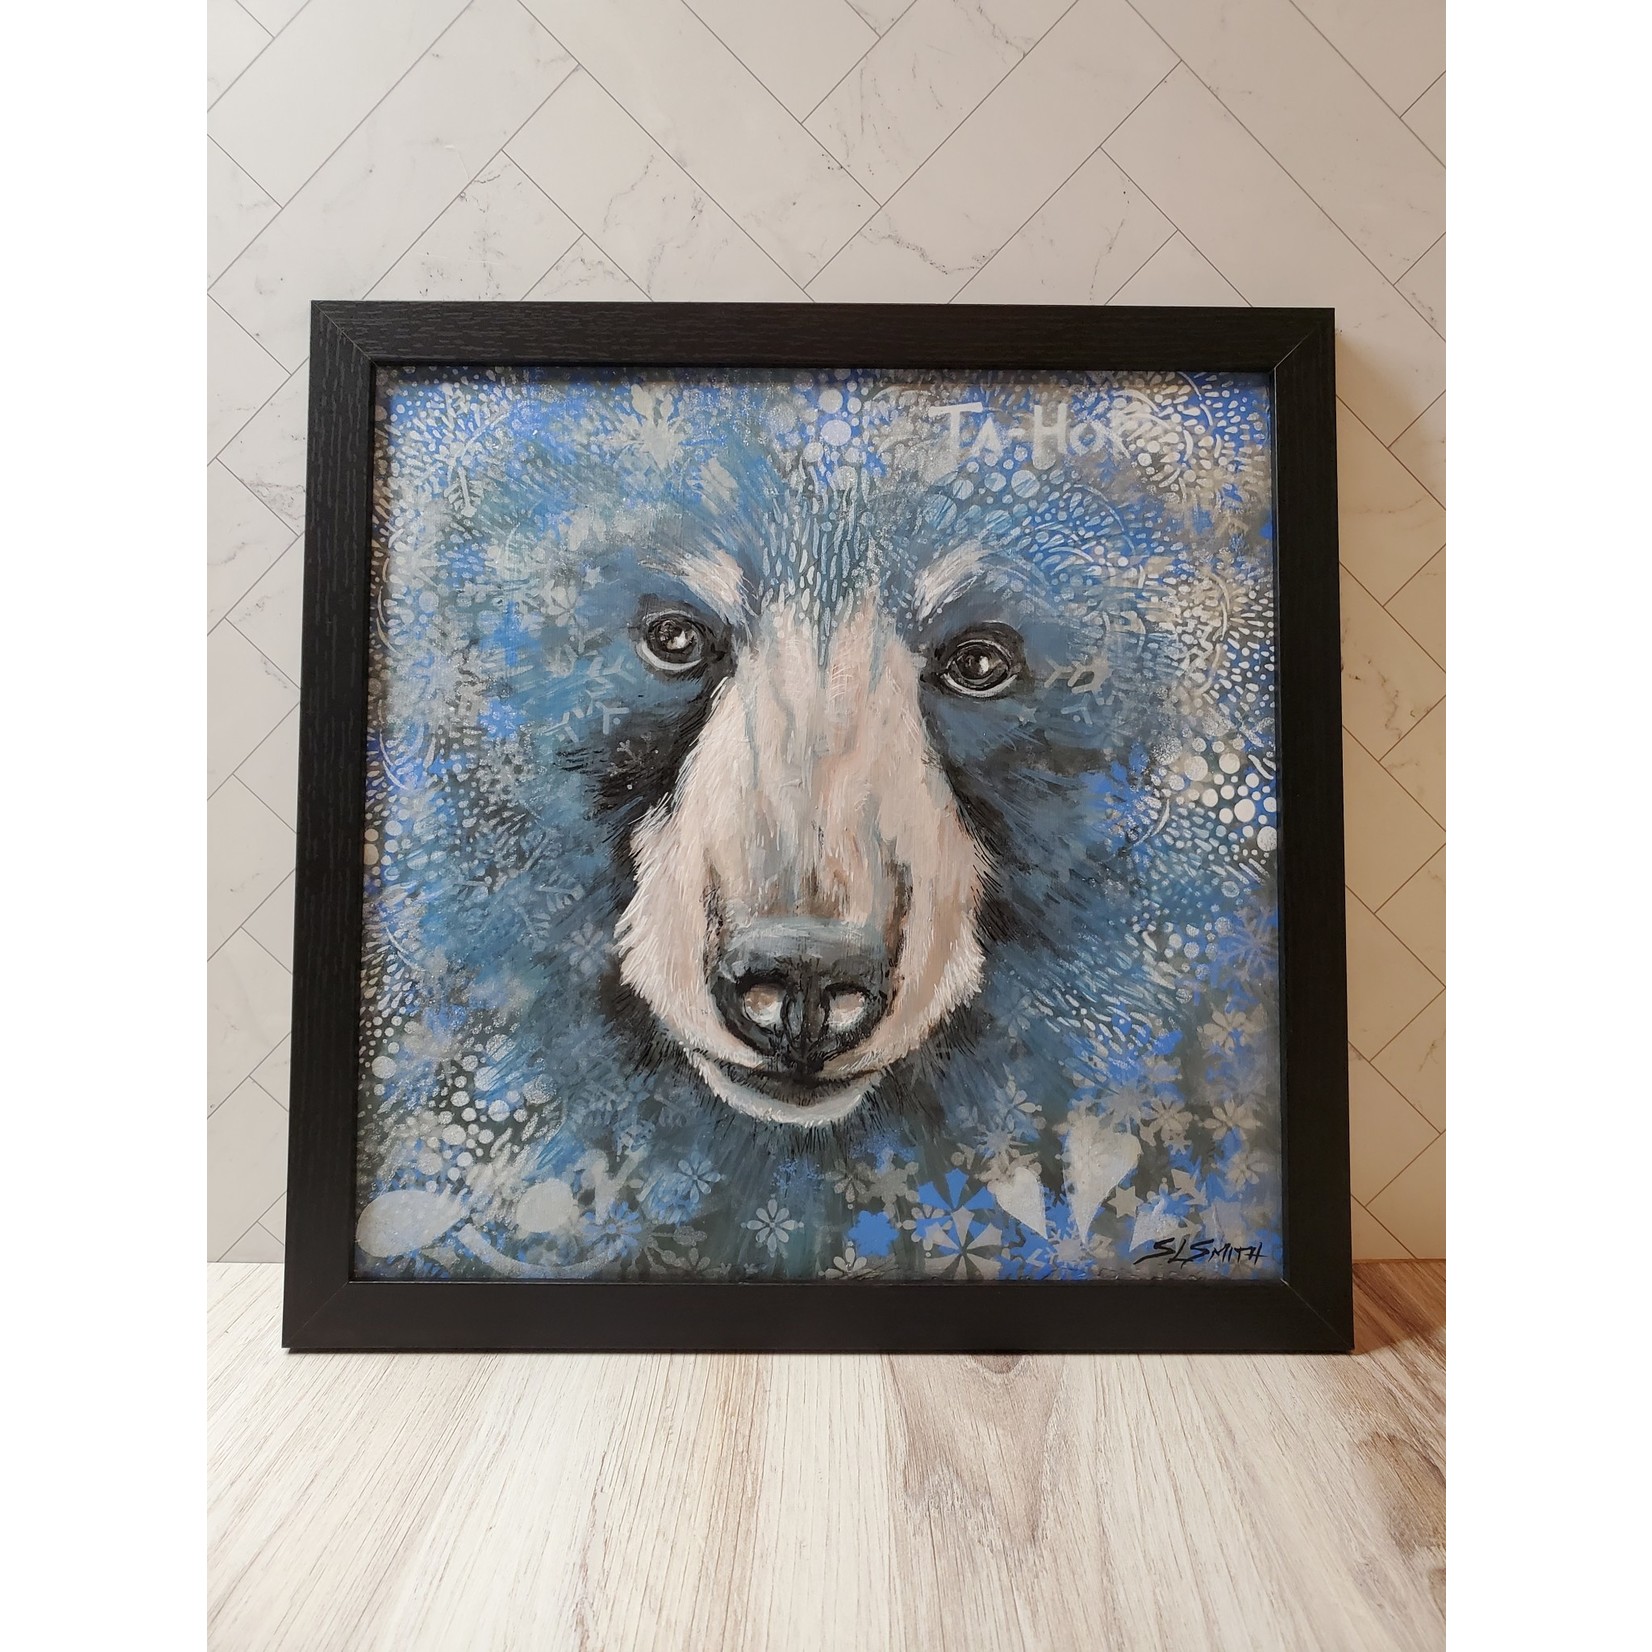 Sara L Smith "Winter Bear" Wilding Mini - mixed acrylics - framed - 13x13"